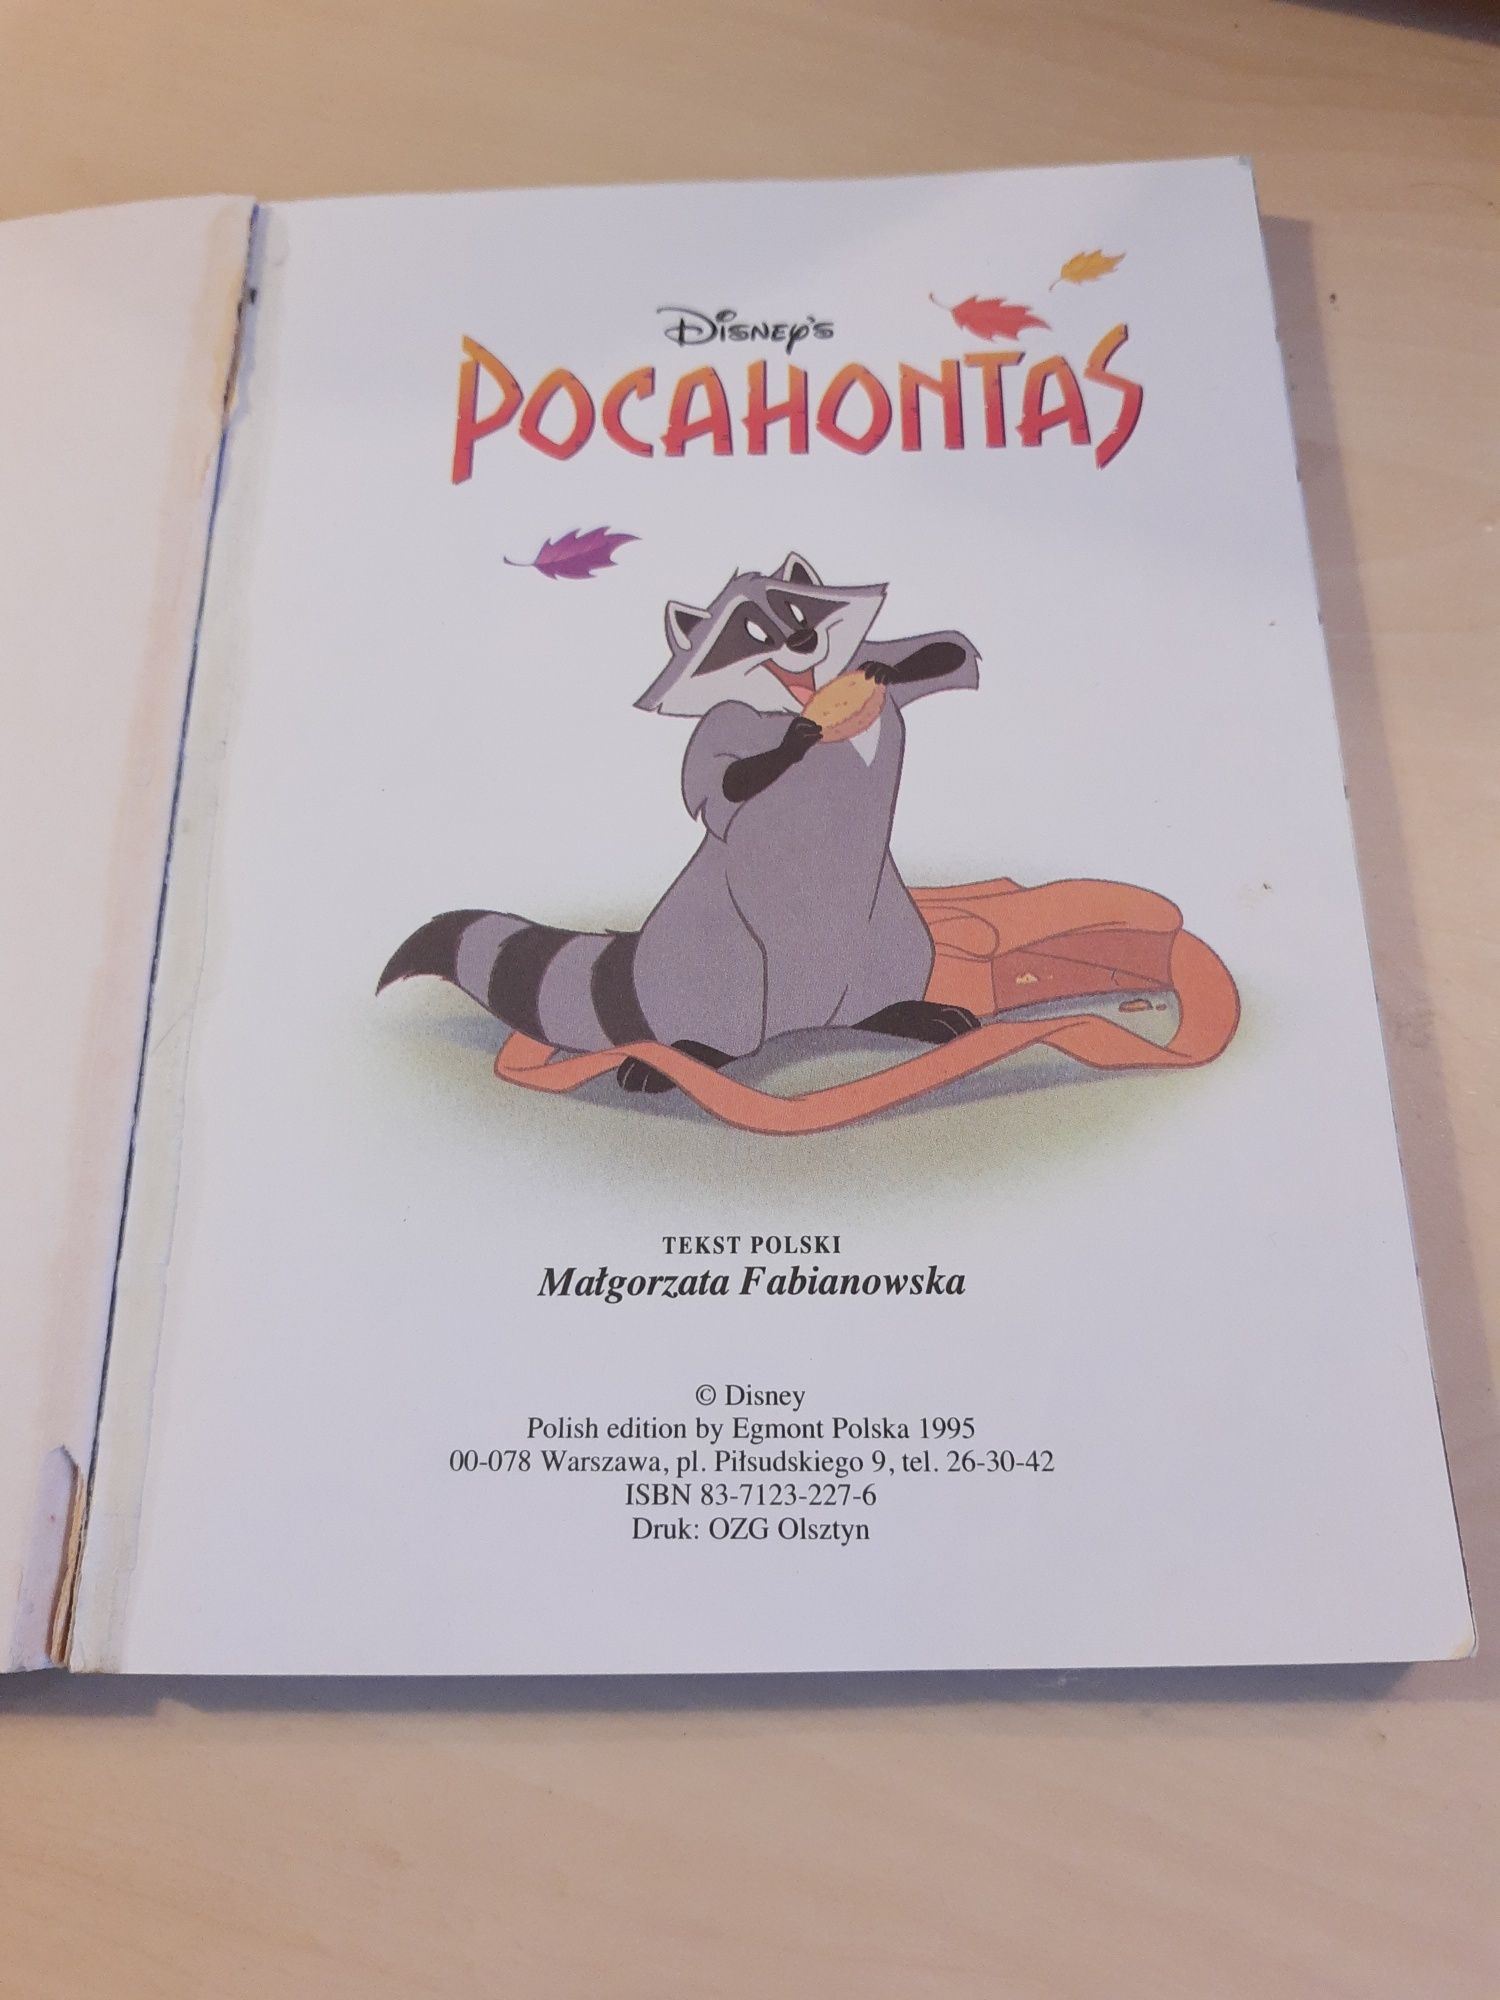 Książka "Pocahontas" pierwsze polskie wydanie